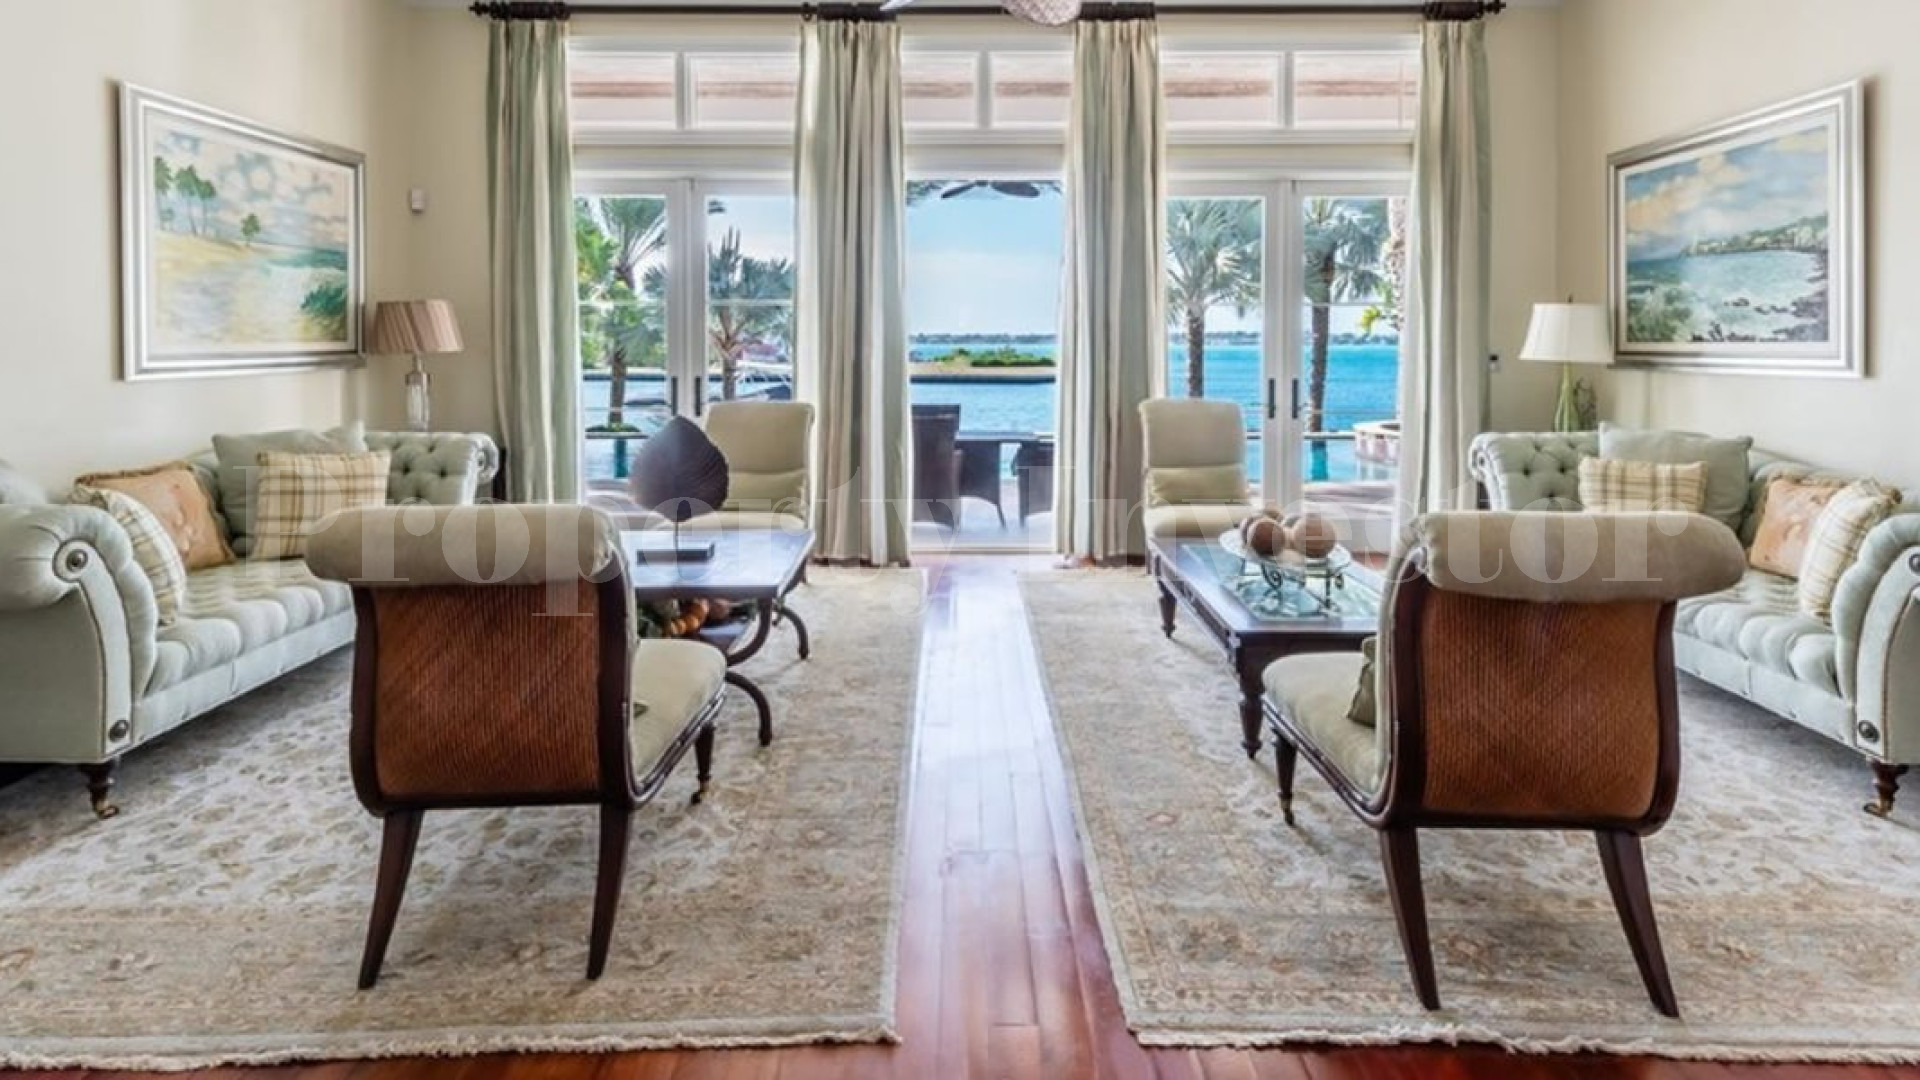 Впечатляющая роскошная вилла с 6 спальнями на берегу океана в престижном закрытом сообществе на острове Парадайз, Багамы